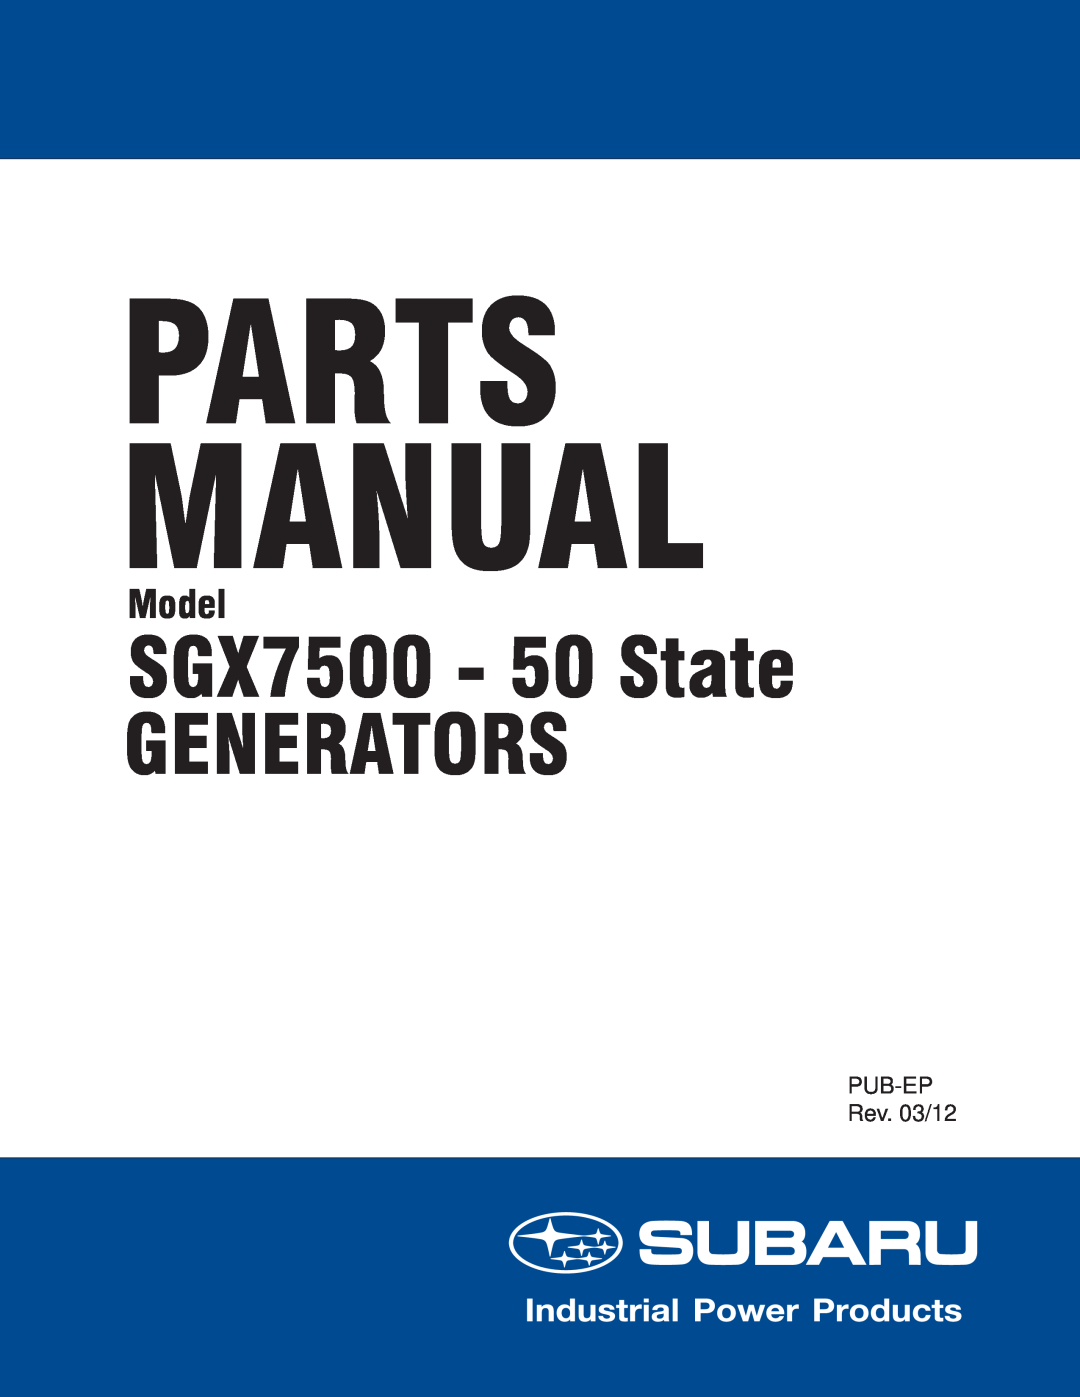 Subaru manual Parts Manual, SGX7500 - 50 State GENERATORS, Model, PUB-EPRev. 03/12 